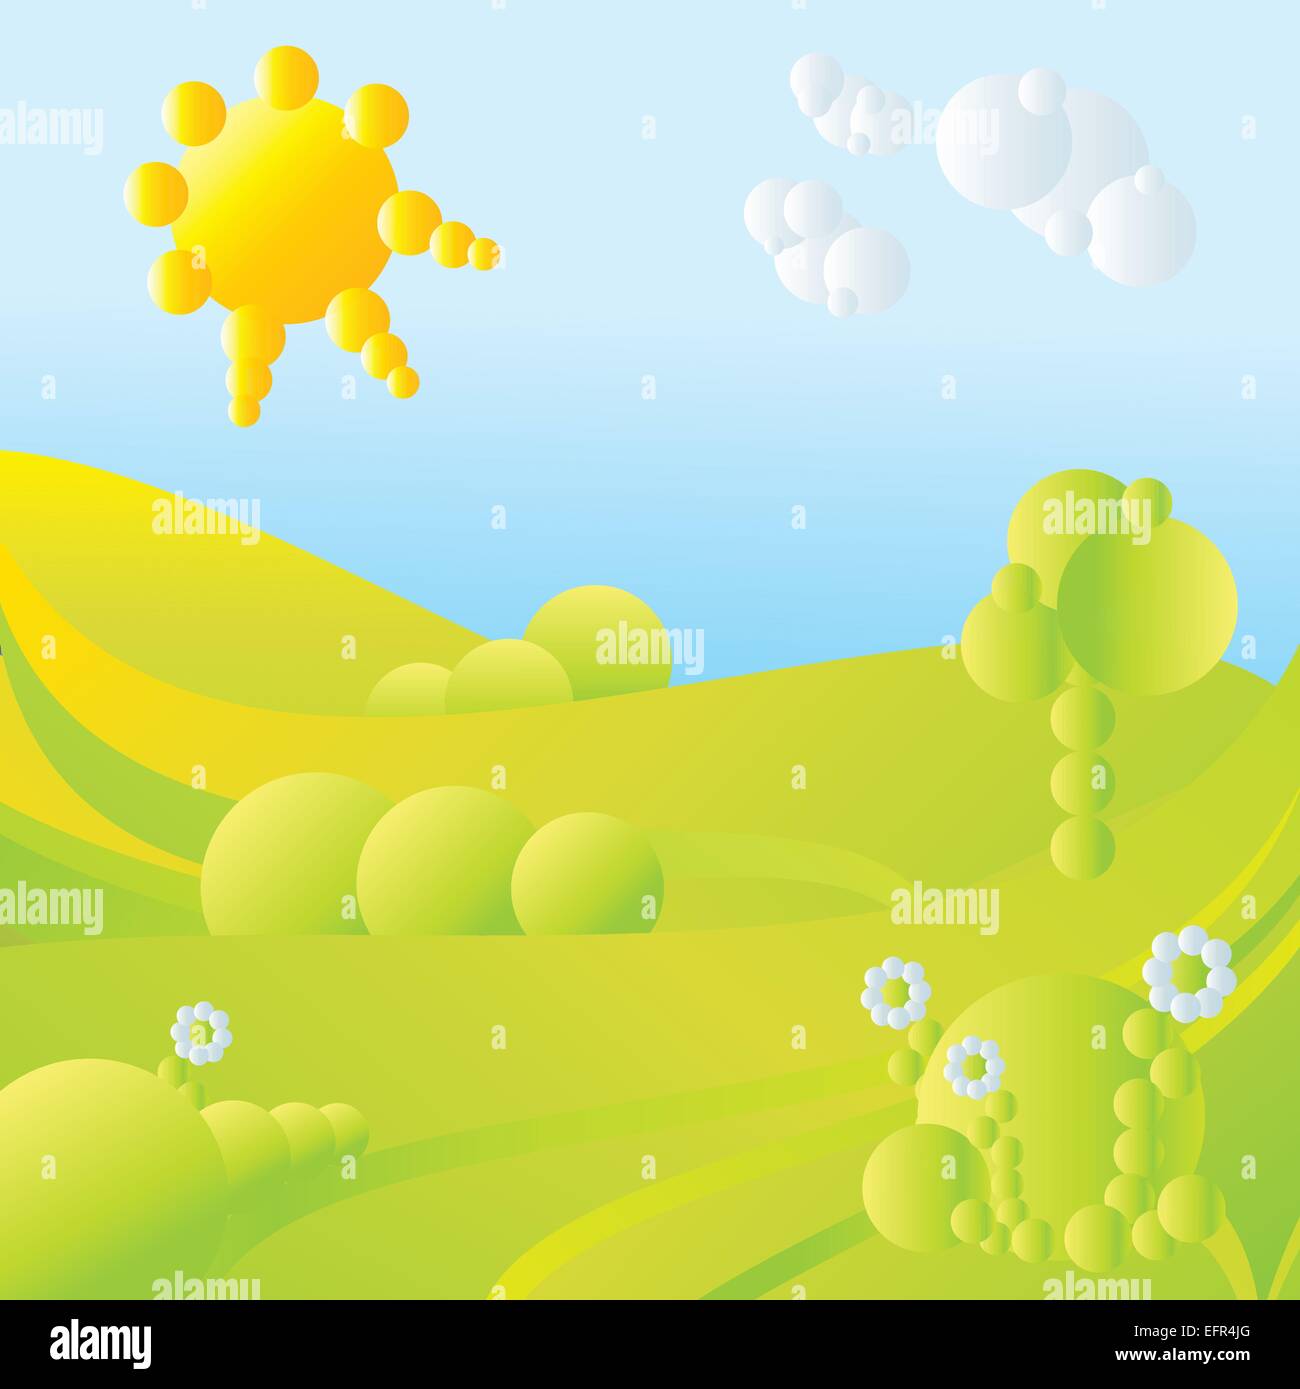 blauer Himmel, grüne Rasen, Bäume, Wolken, Sonne und Blumen abstrakte Landschaft-Vektor-illustration Stock Vektor